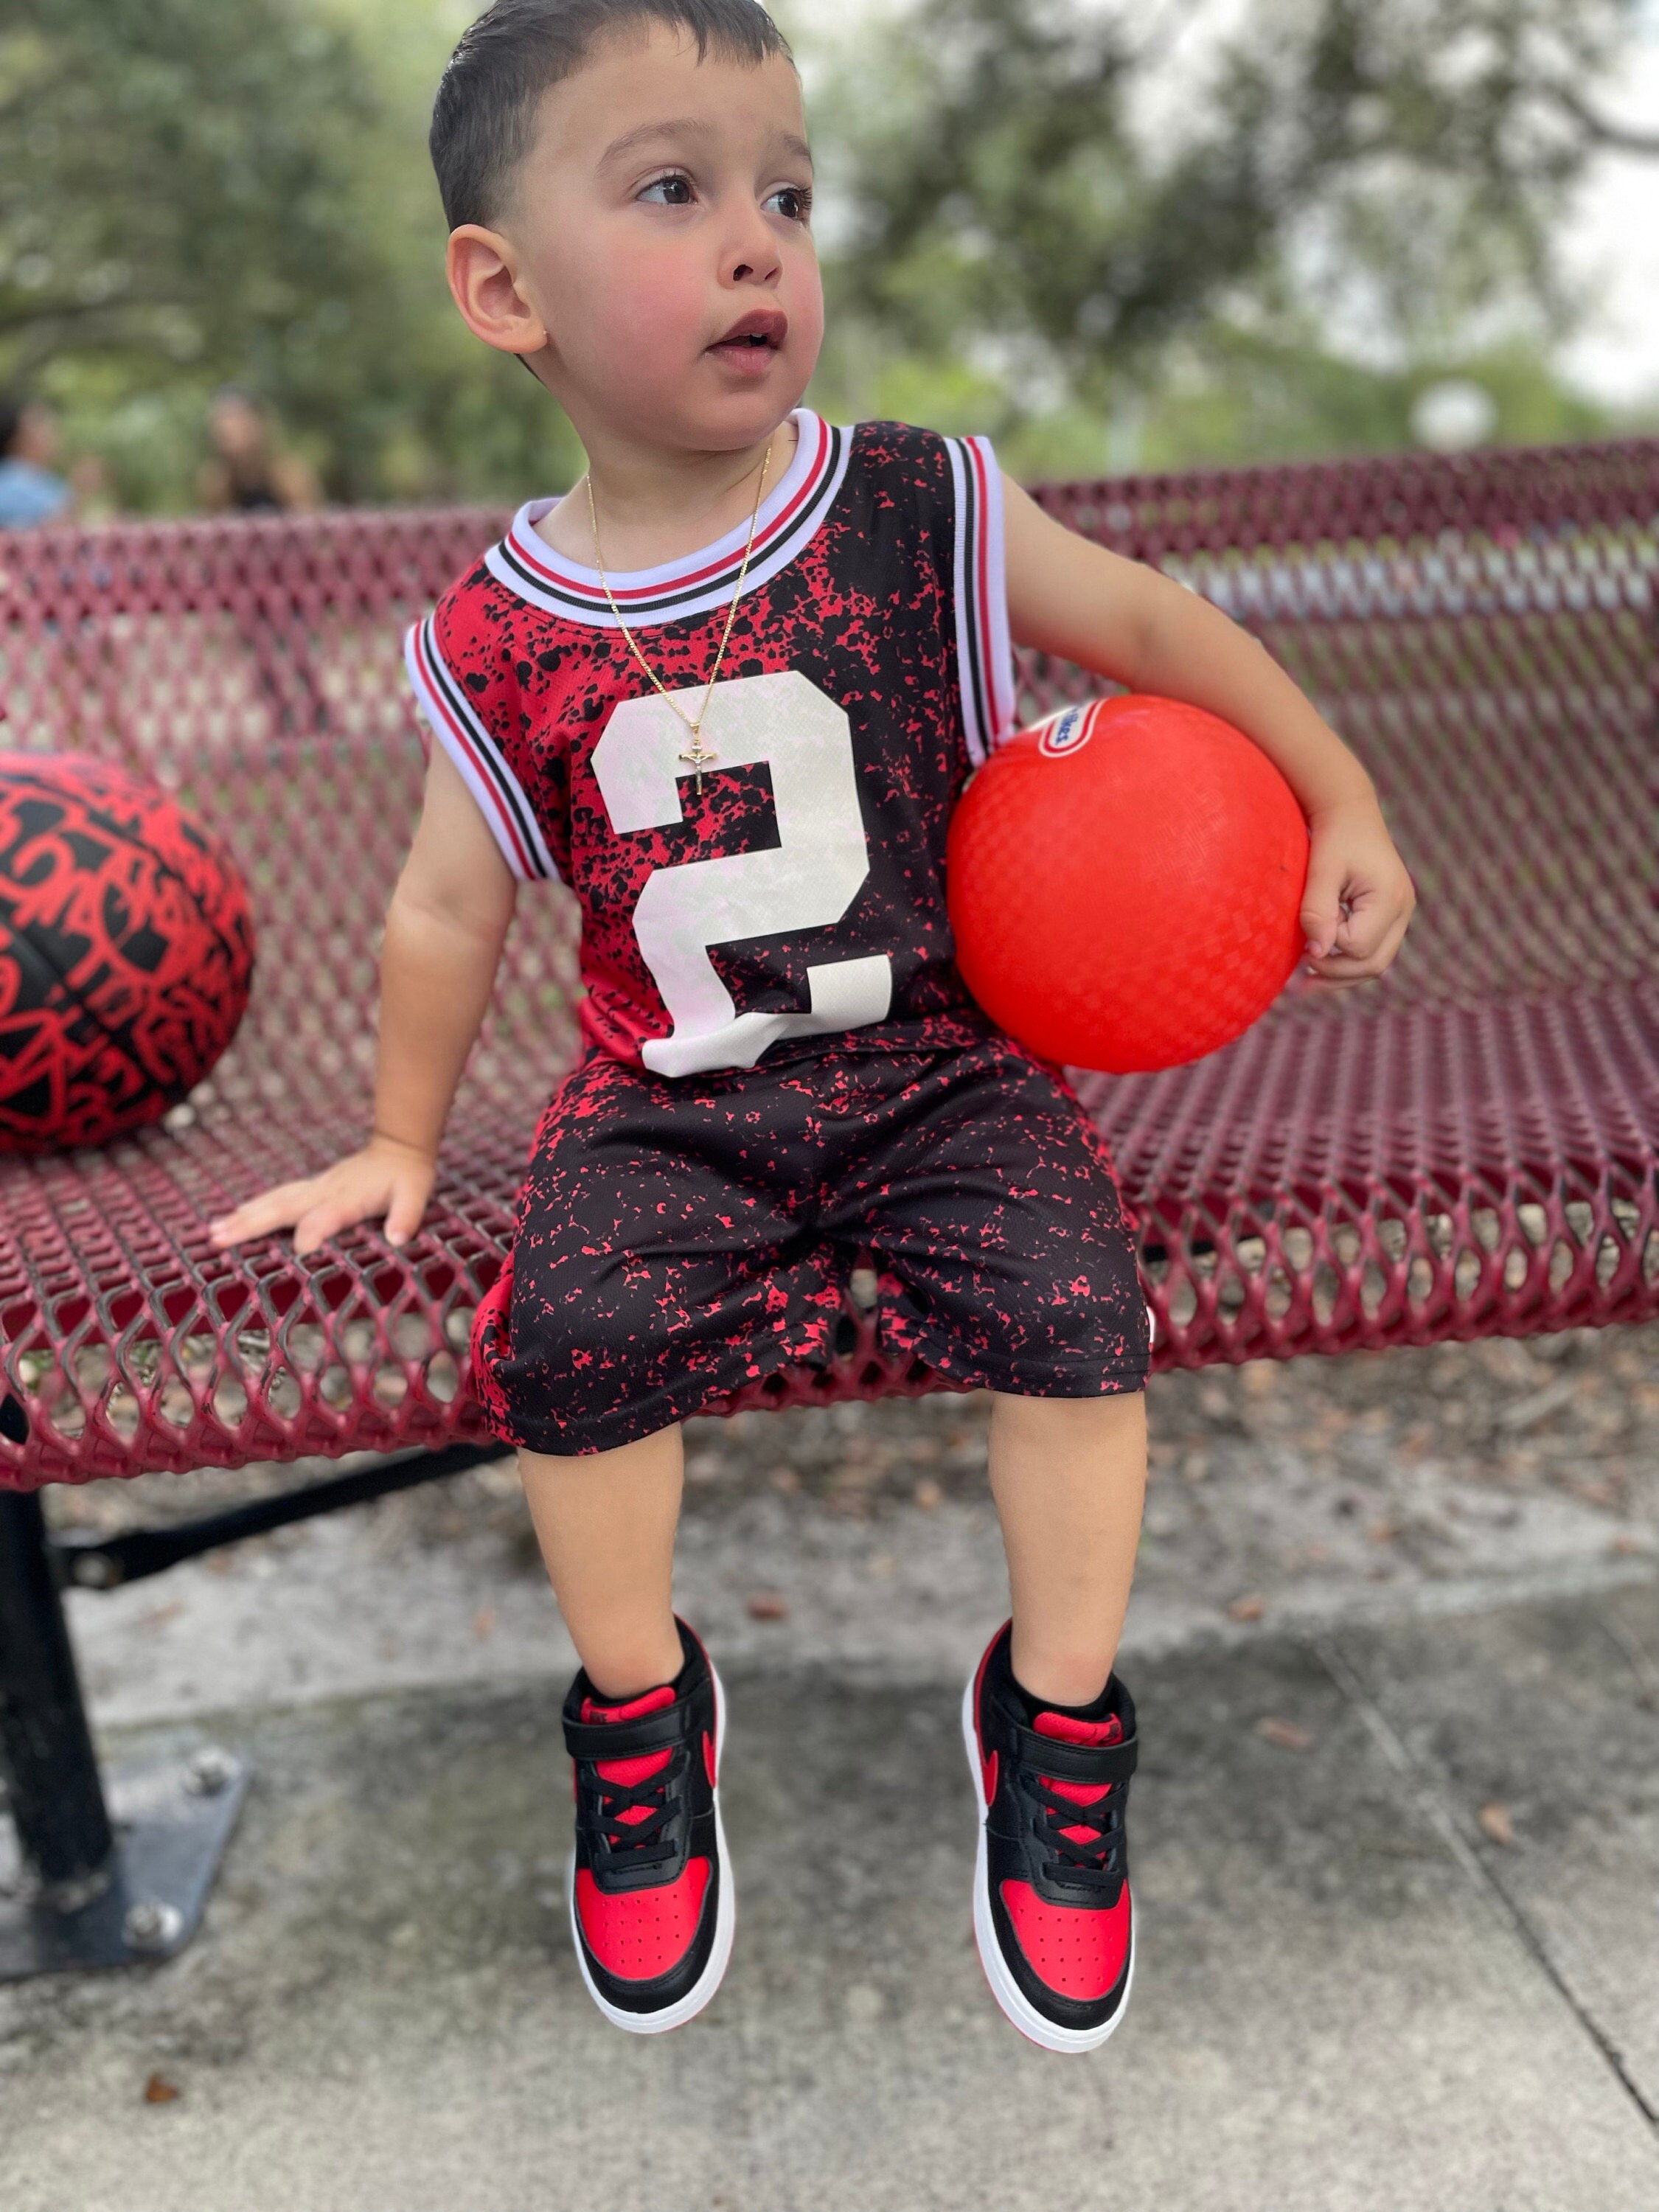 MelissasStitches Ultimate Kids Basketball Set: Personalized Jersey, Shorts, Ball, and Sweatband Combo